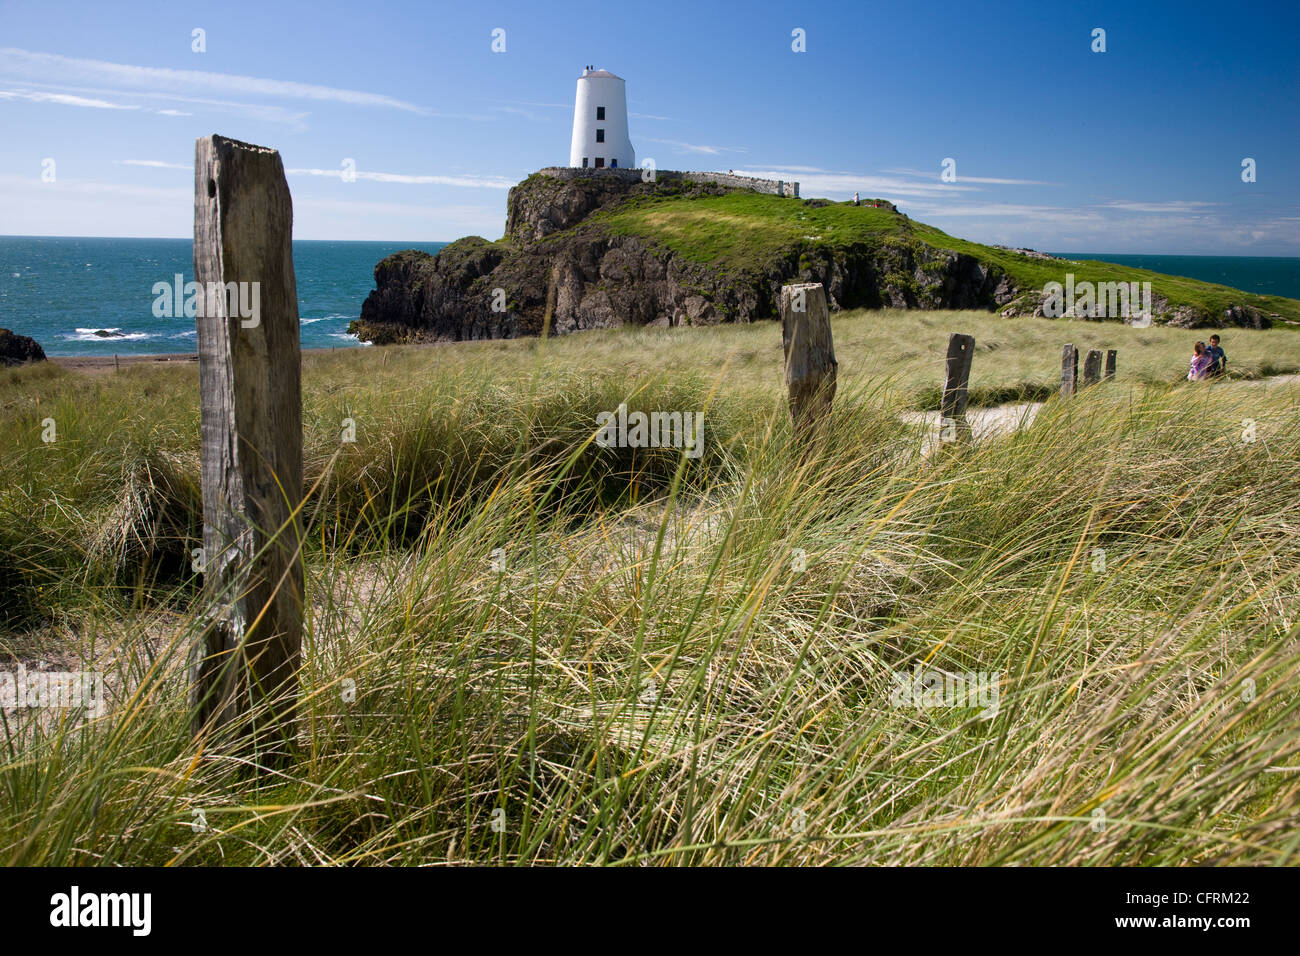 Ynys Llanddwyn Island in Anglesey, North Wales Stock Photo